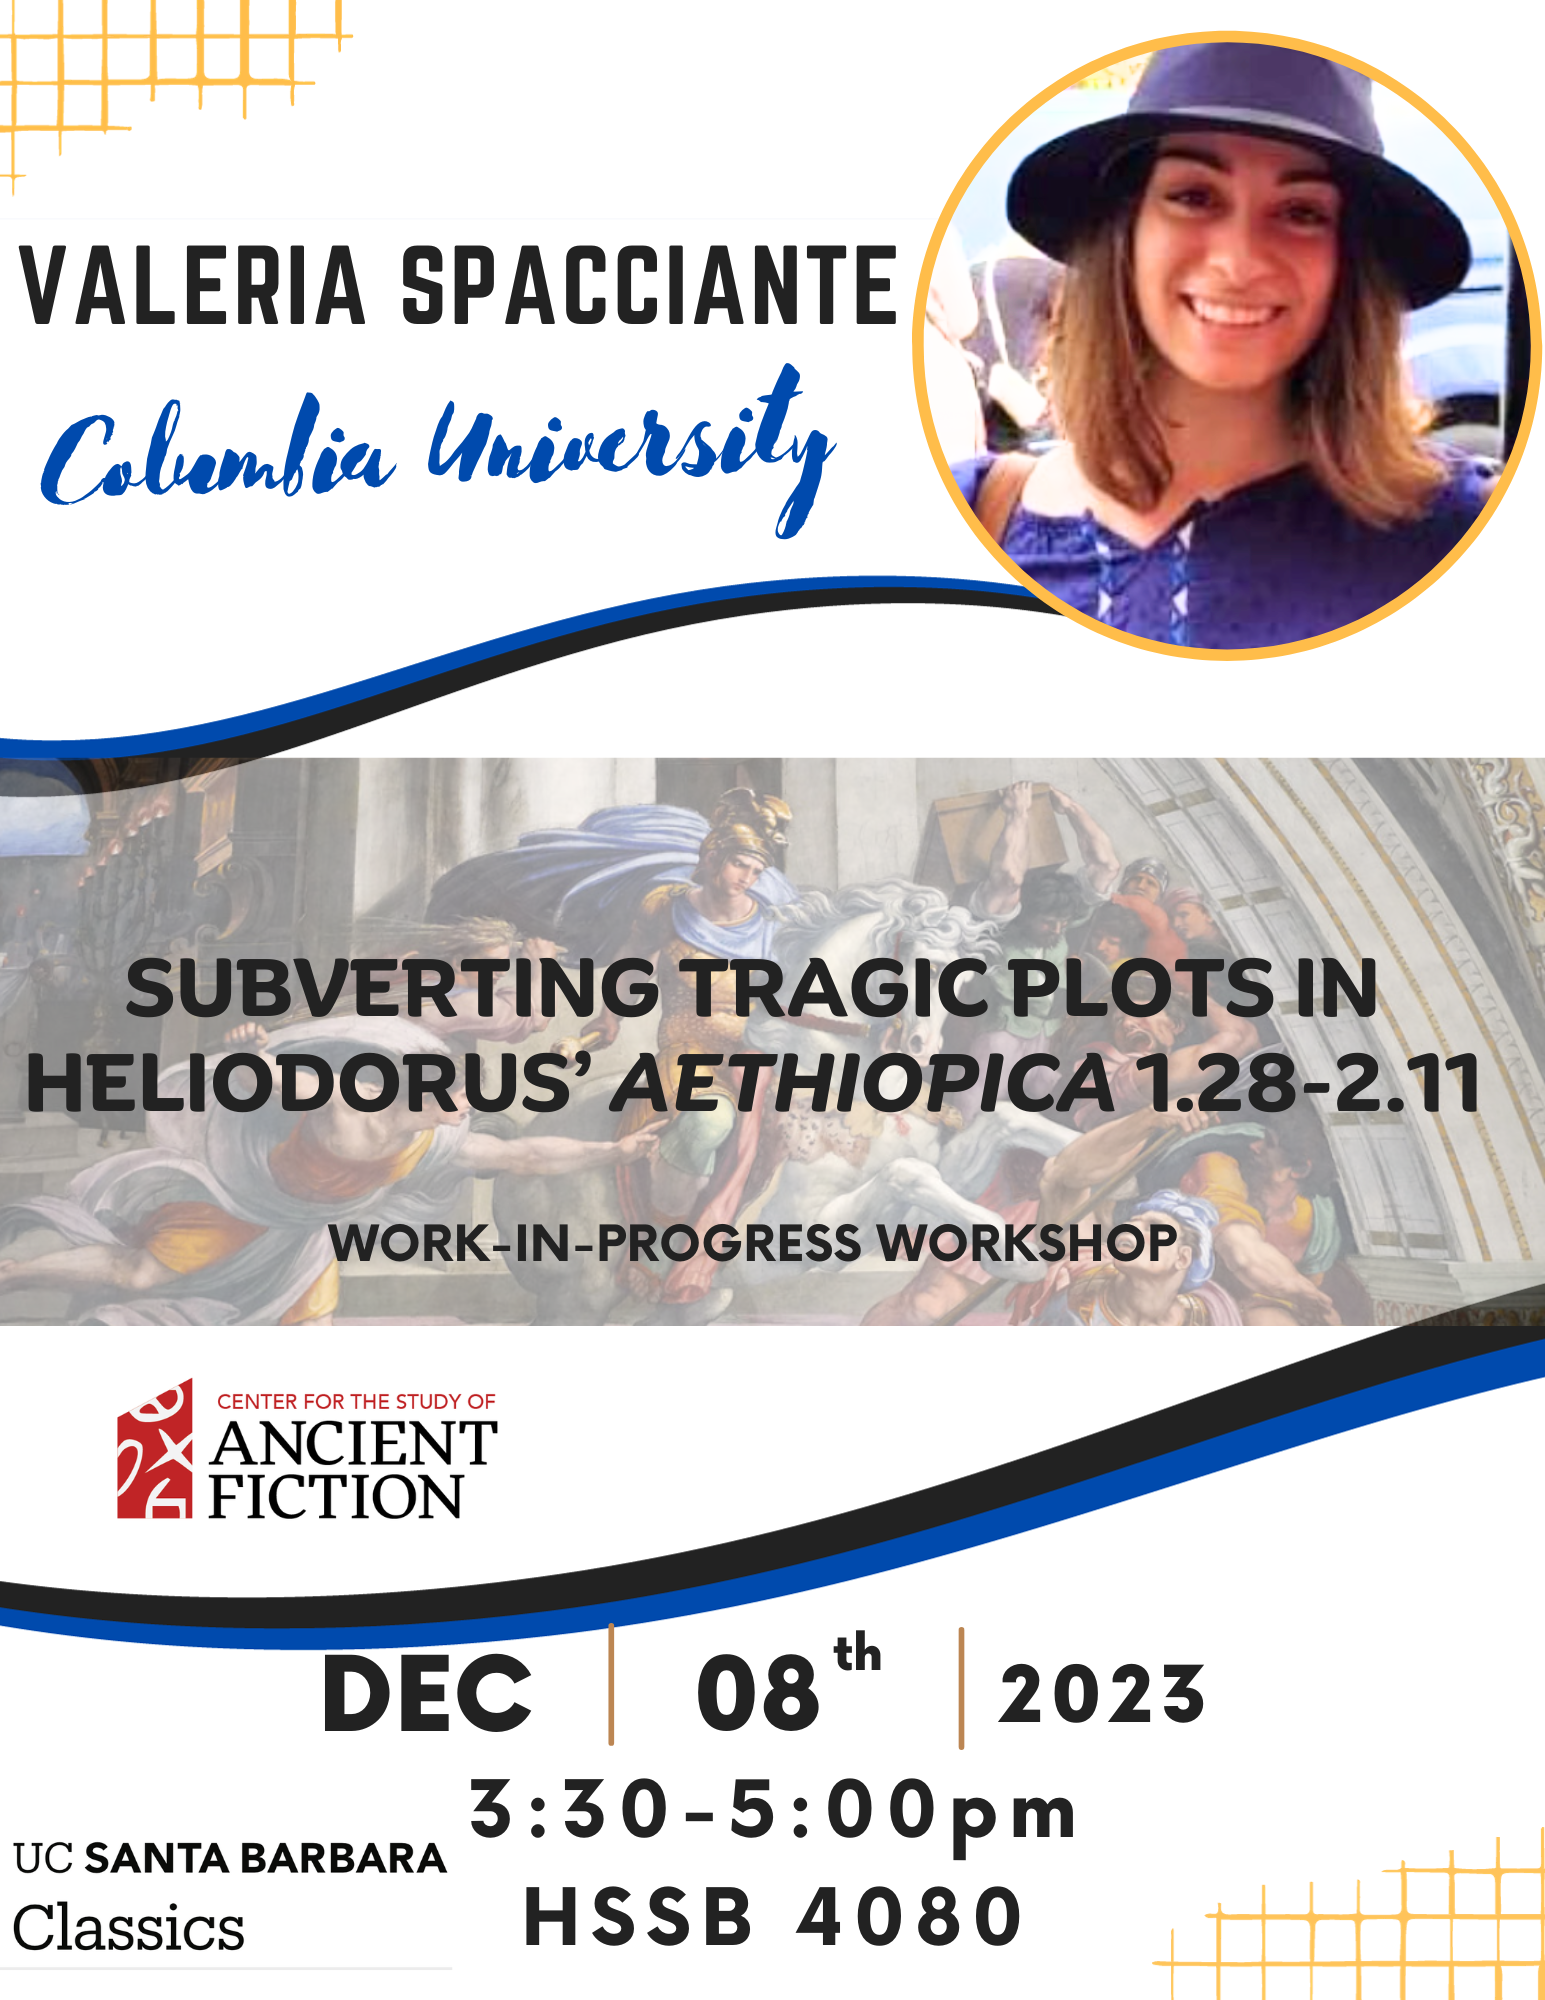 Valeria Spacciante (Columbia University): "Subverting Tragic Plots in Heliodorus' 'Aethiopica' 1.28-2.11"